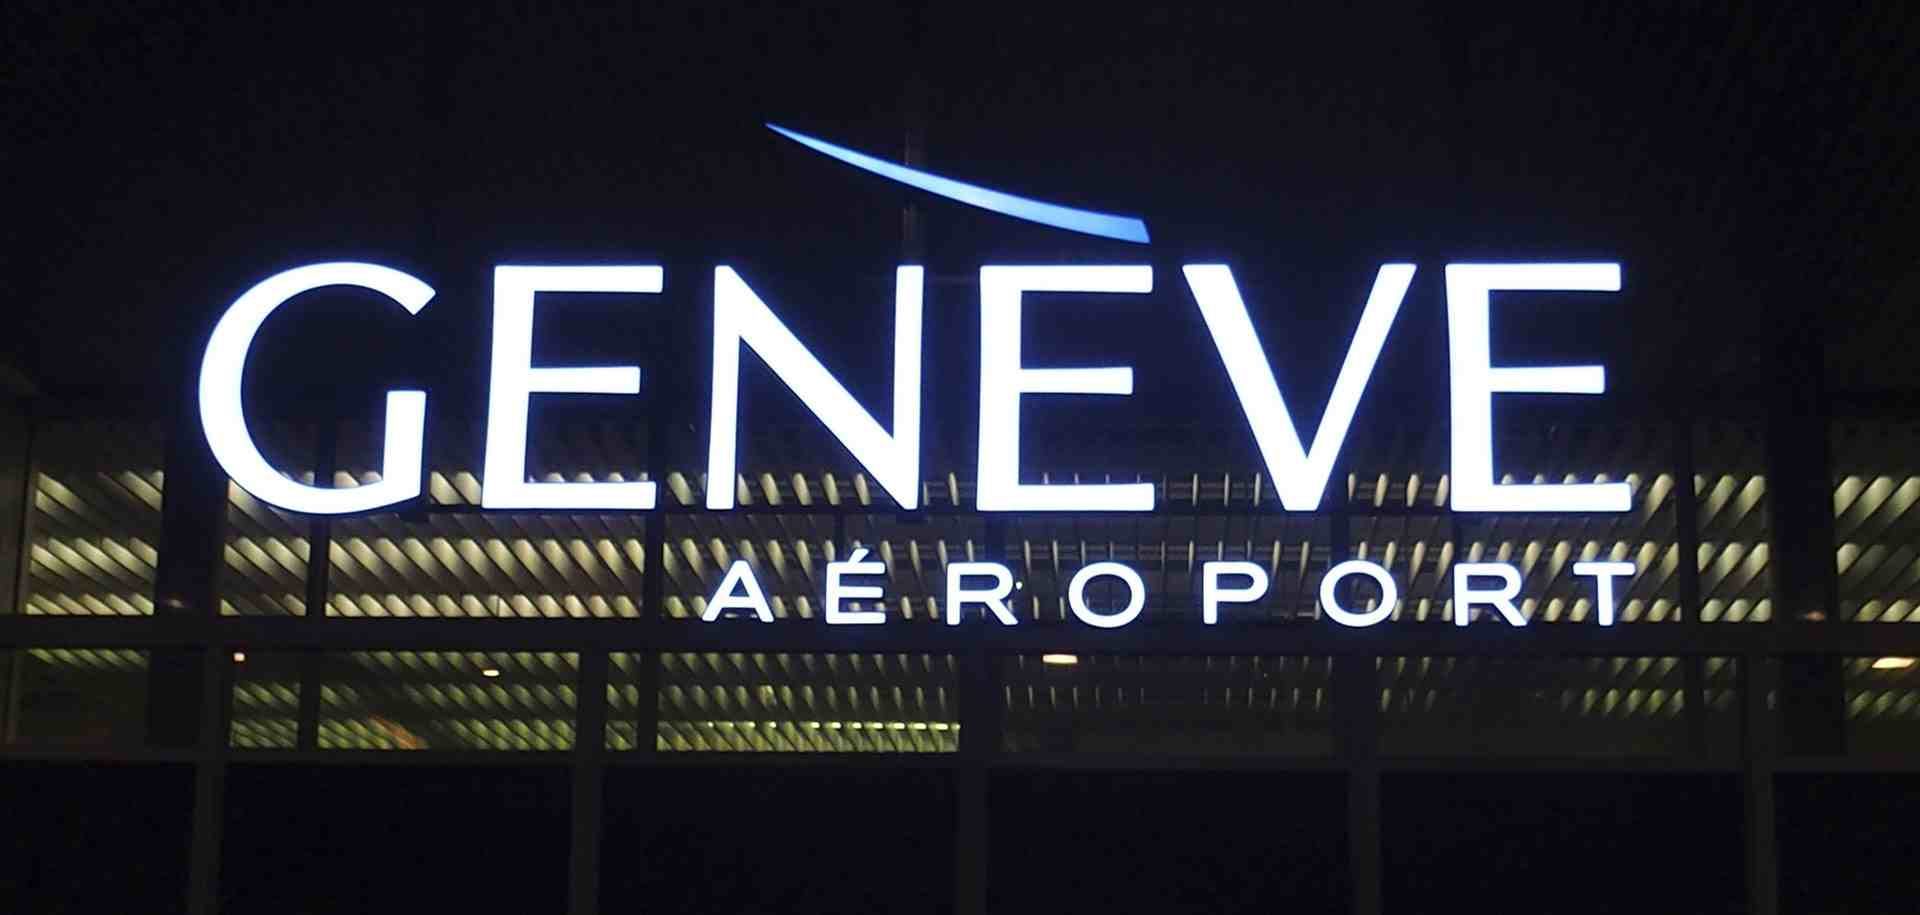 Genève aéroport